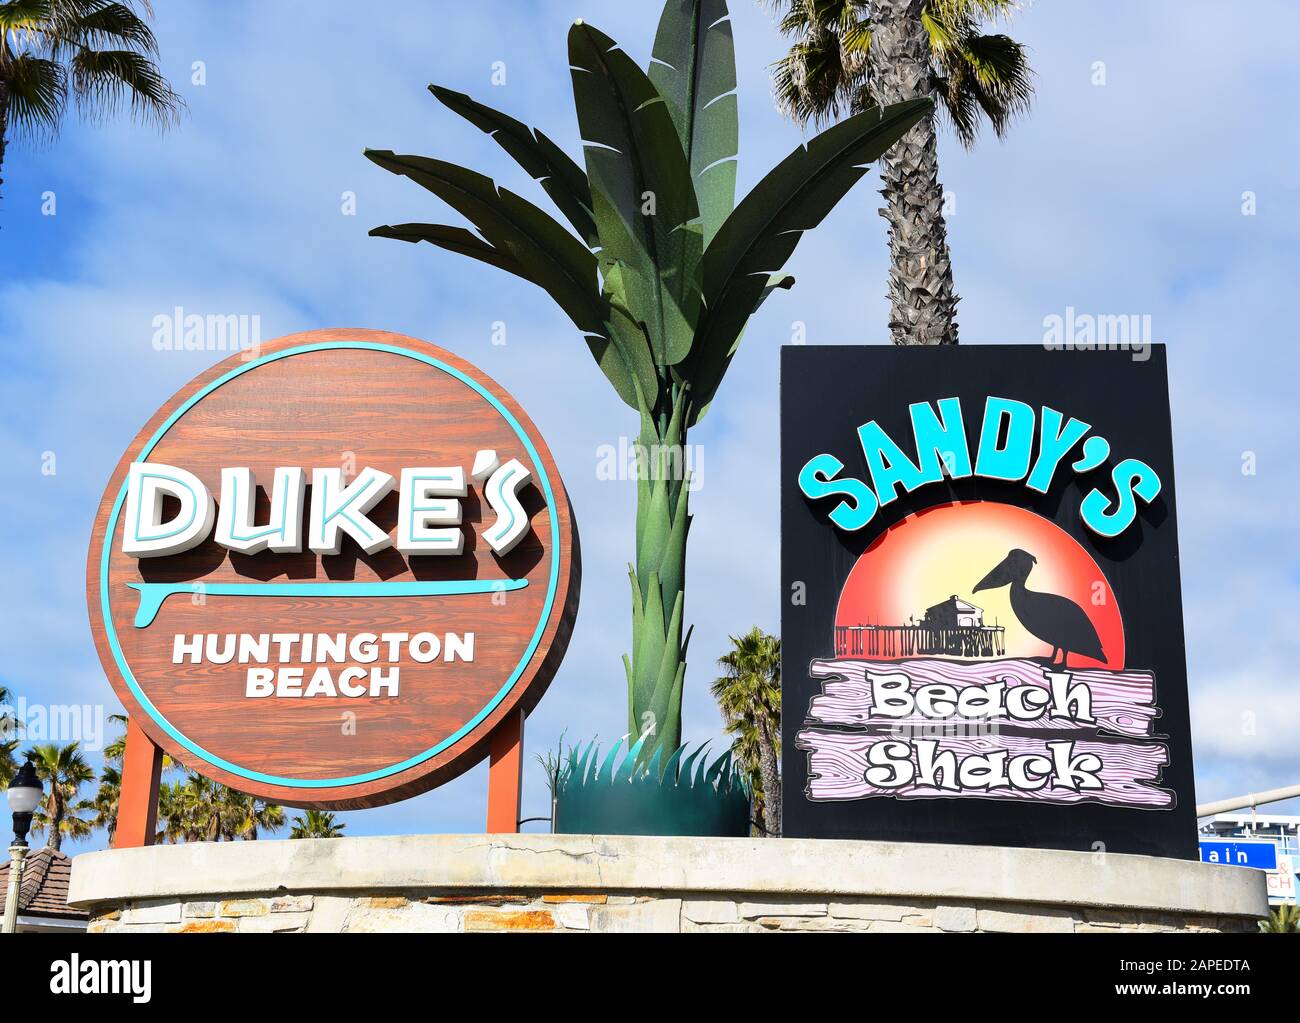 HUNTINGTON BEACH, CALIFORNIA - 22 JAN 2020: Closeup of the sign for Dukes Restaurant and Sandys Beach Shack at the pier in Huntington Beach. Stock Photo